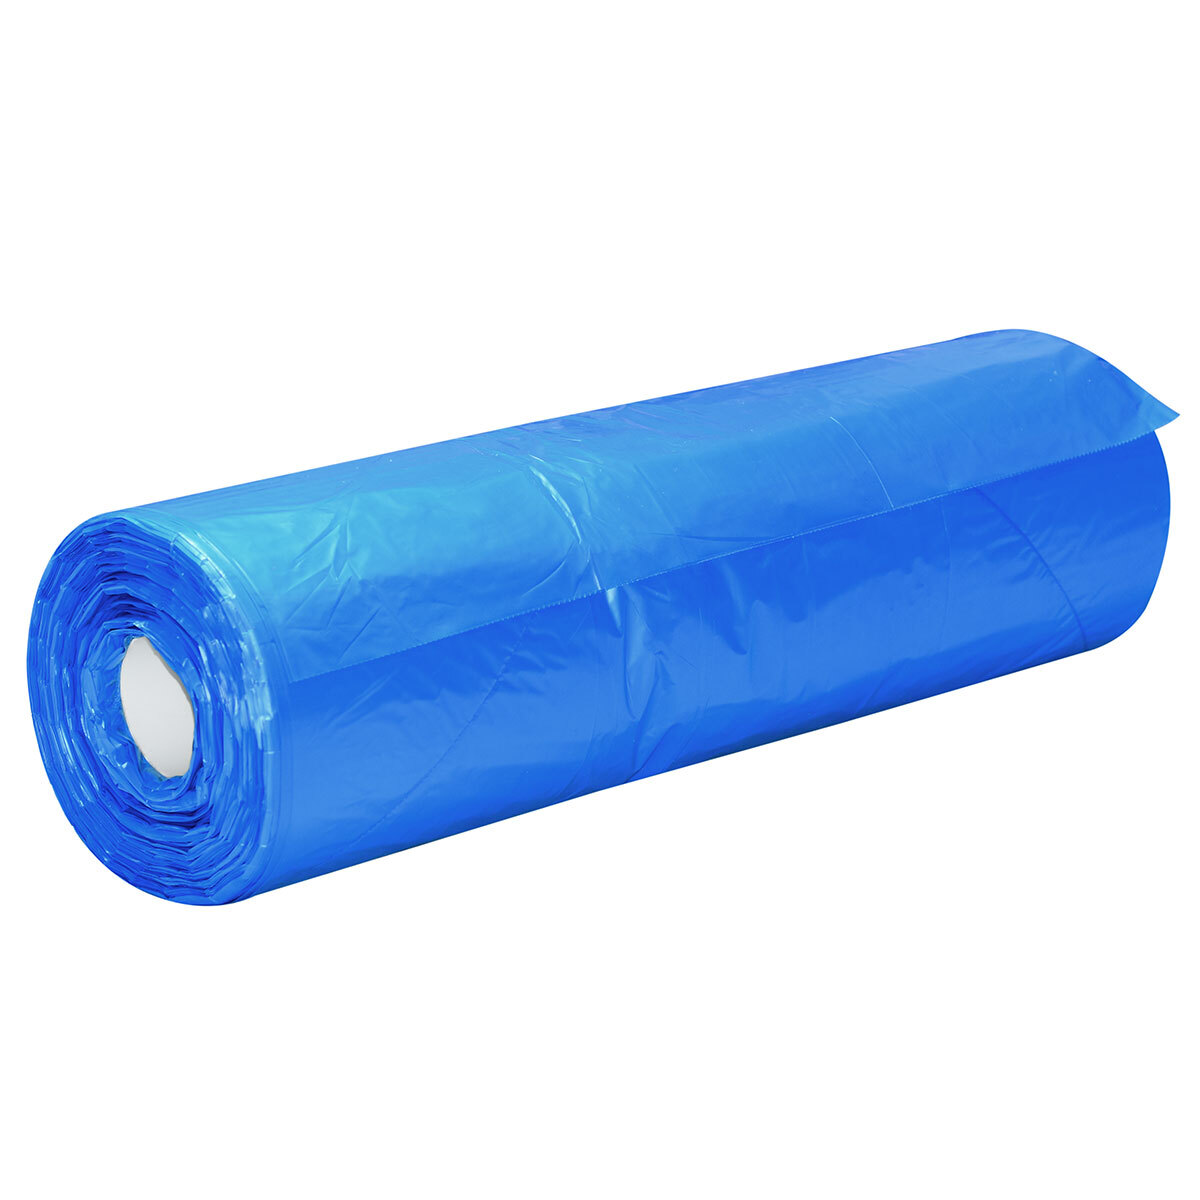 Carton Liner, 635+380x635mm x 22um - Blue 500/Roll, 1 Roll/Ctn